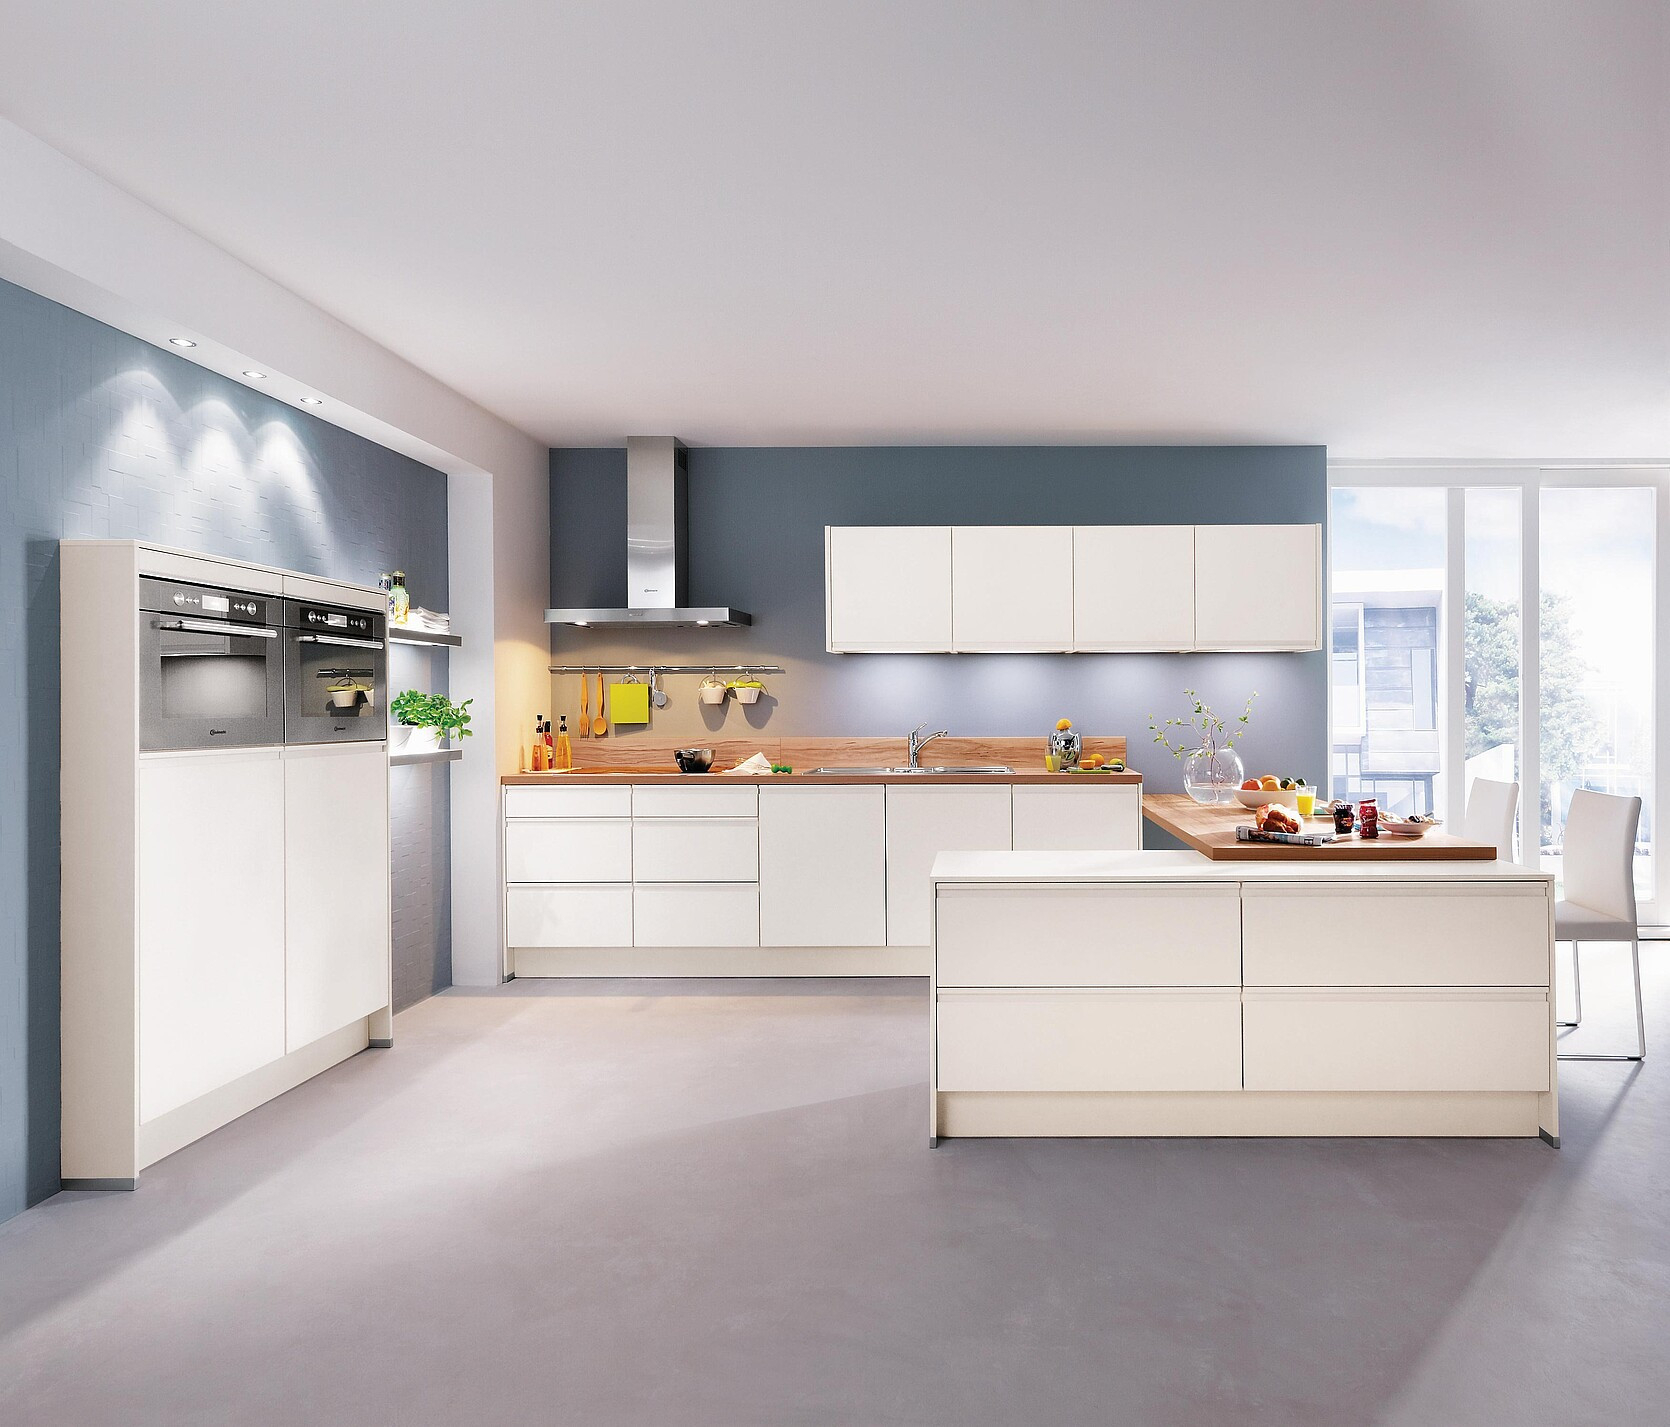 Küche Im Neubau: 10 Goldene Regeln Für Bauherren